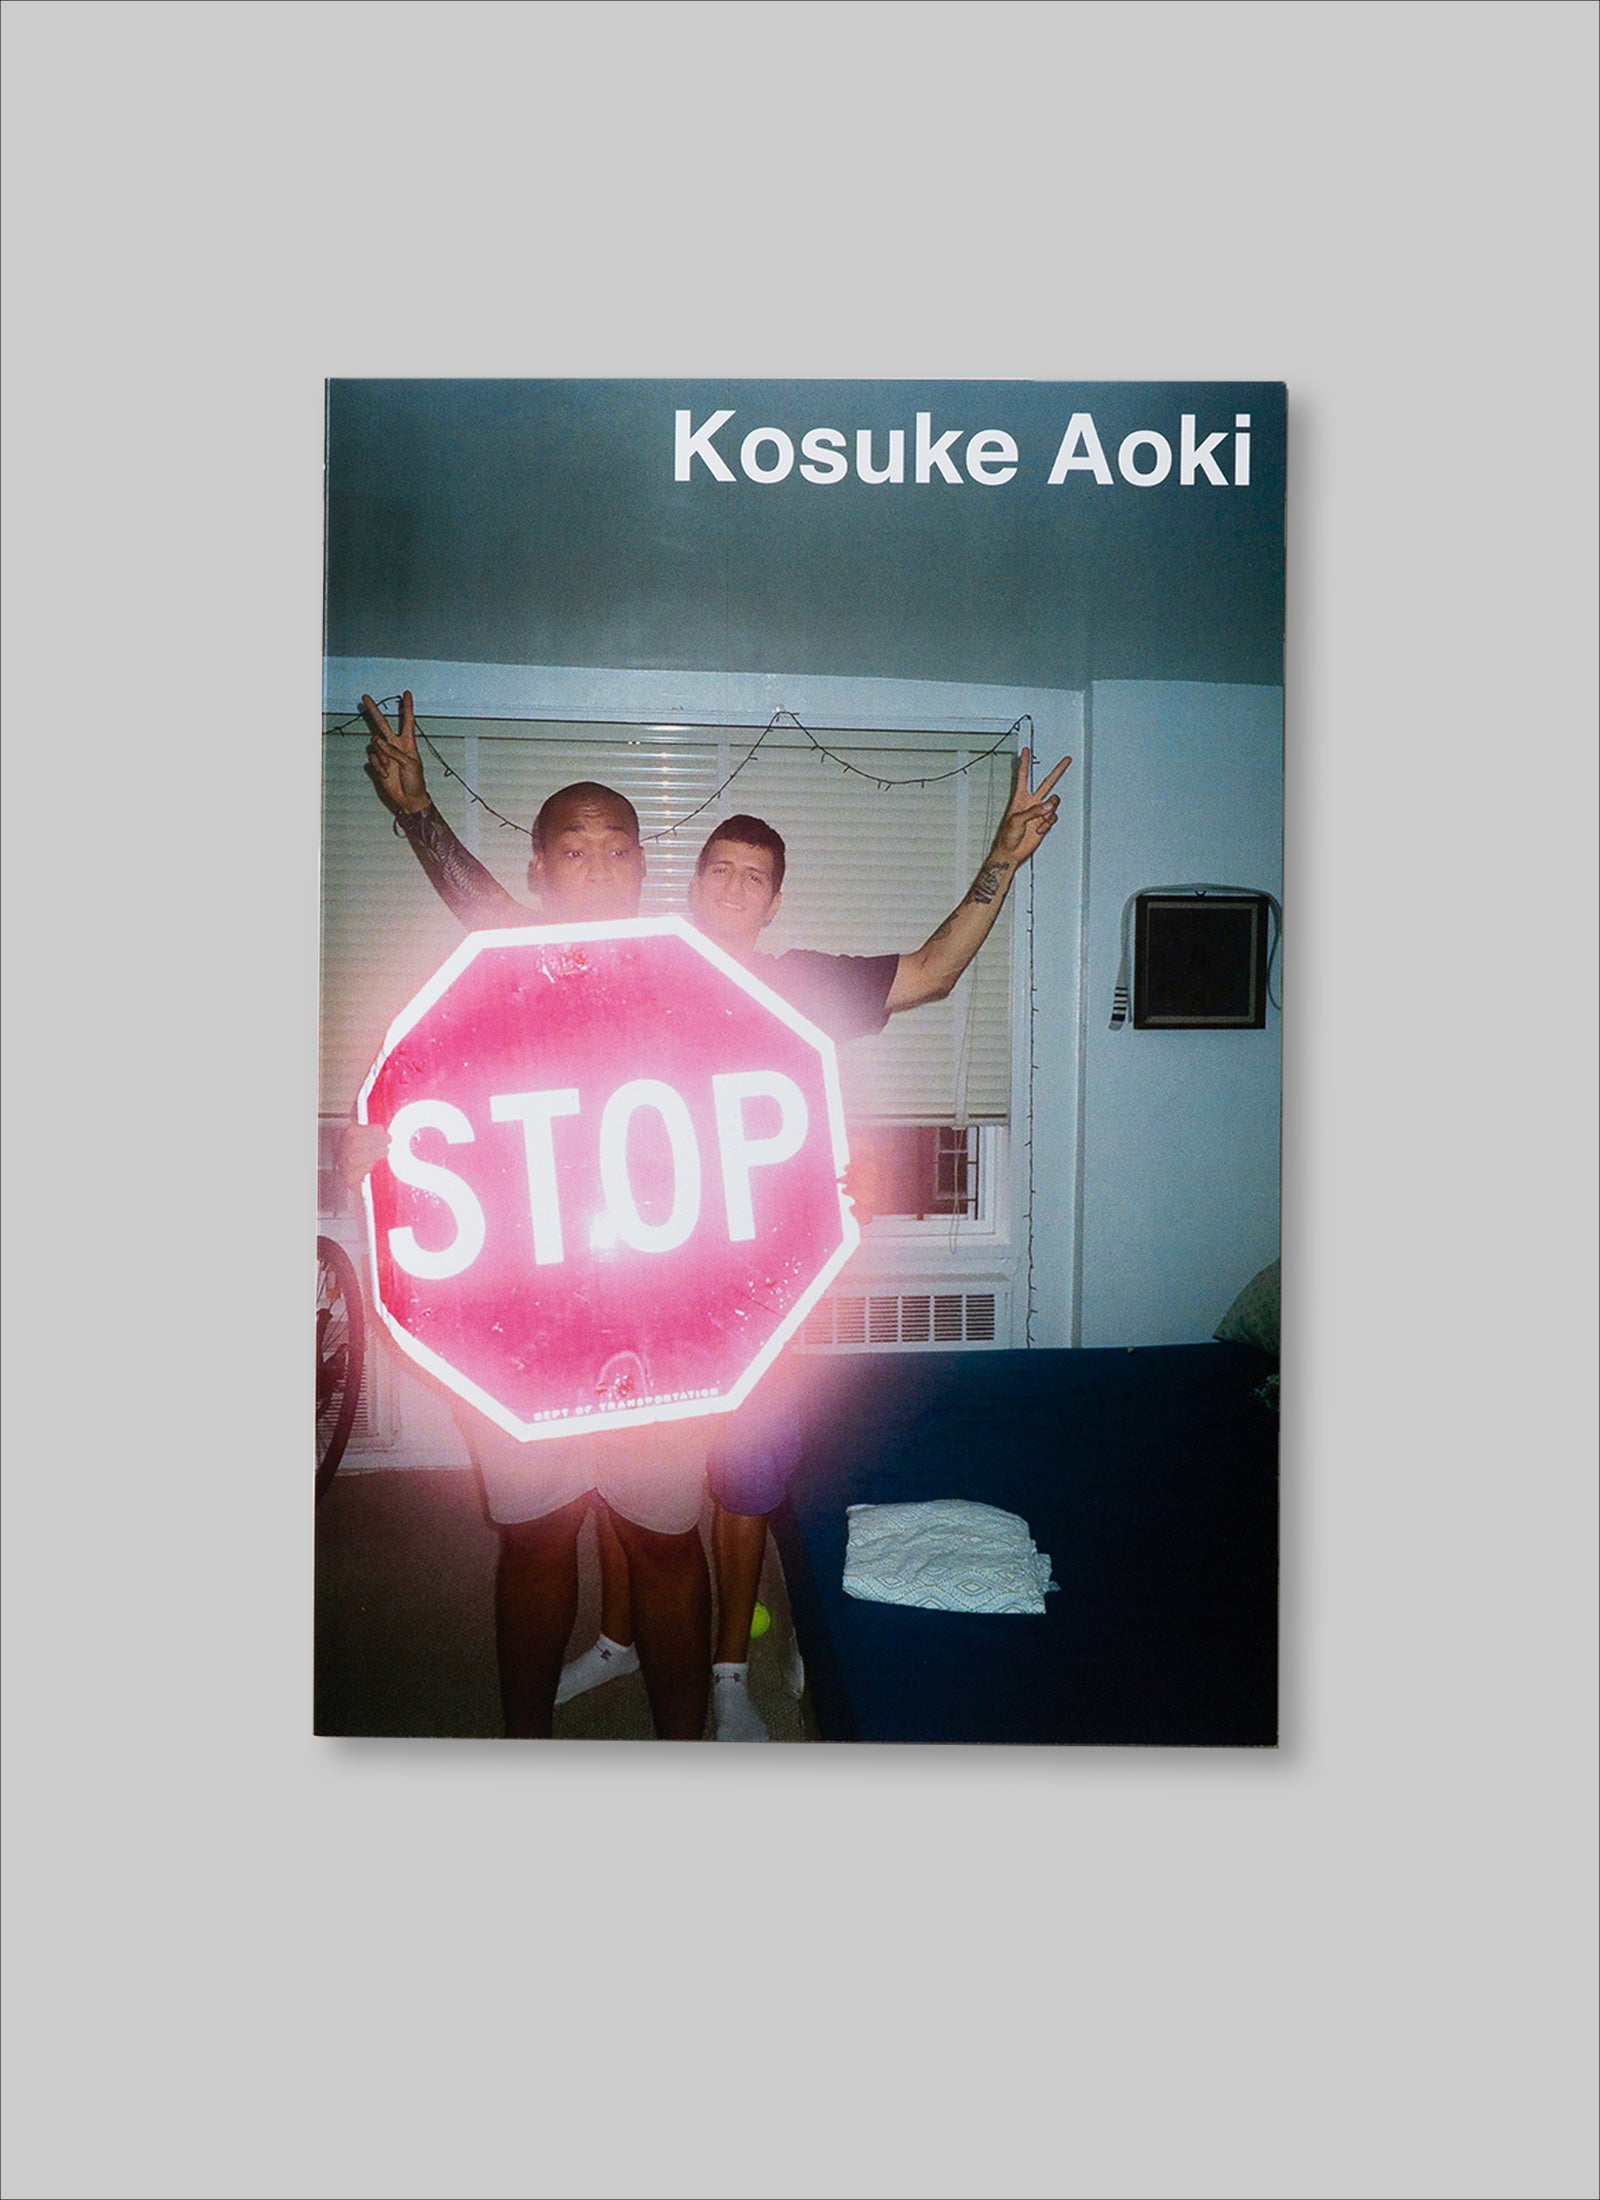 "Kosuke Aoki"